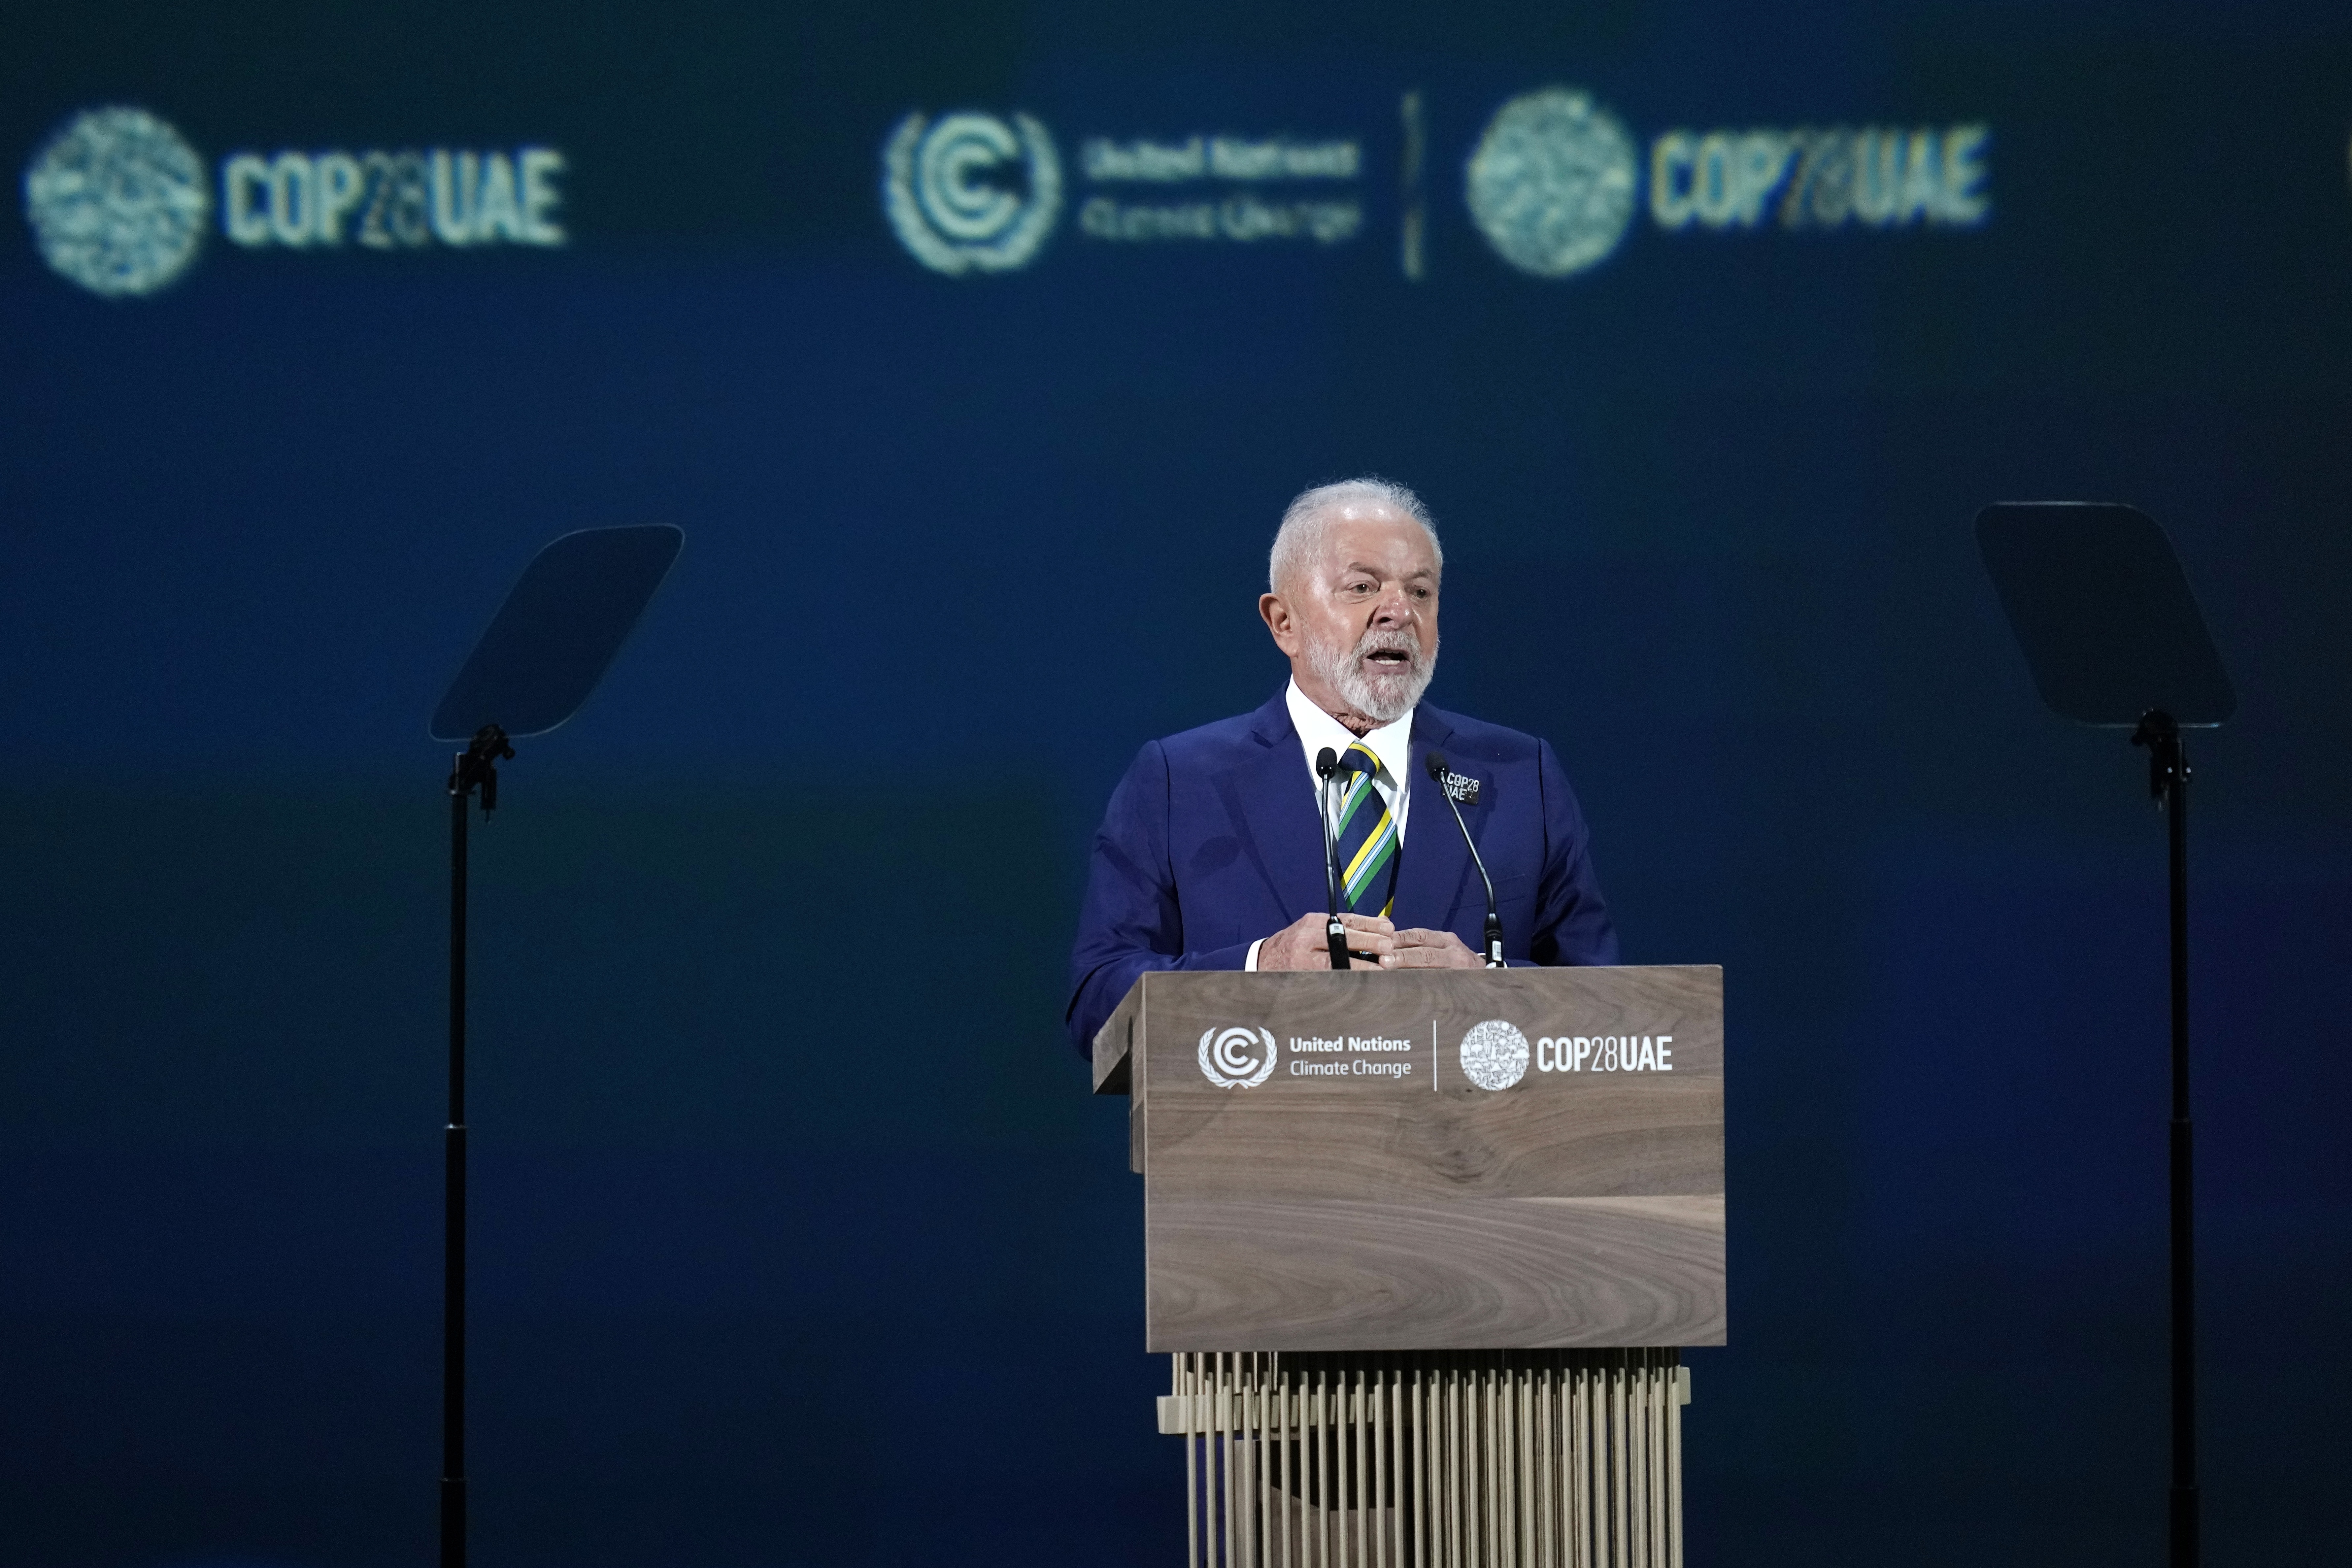 COP 28 chega a acordo para diminuição do uso de petróleo